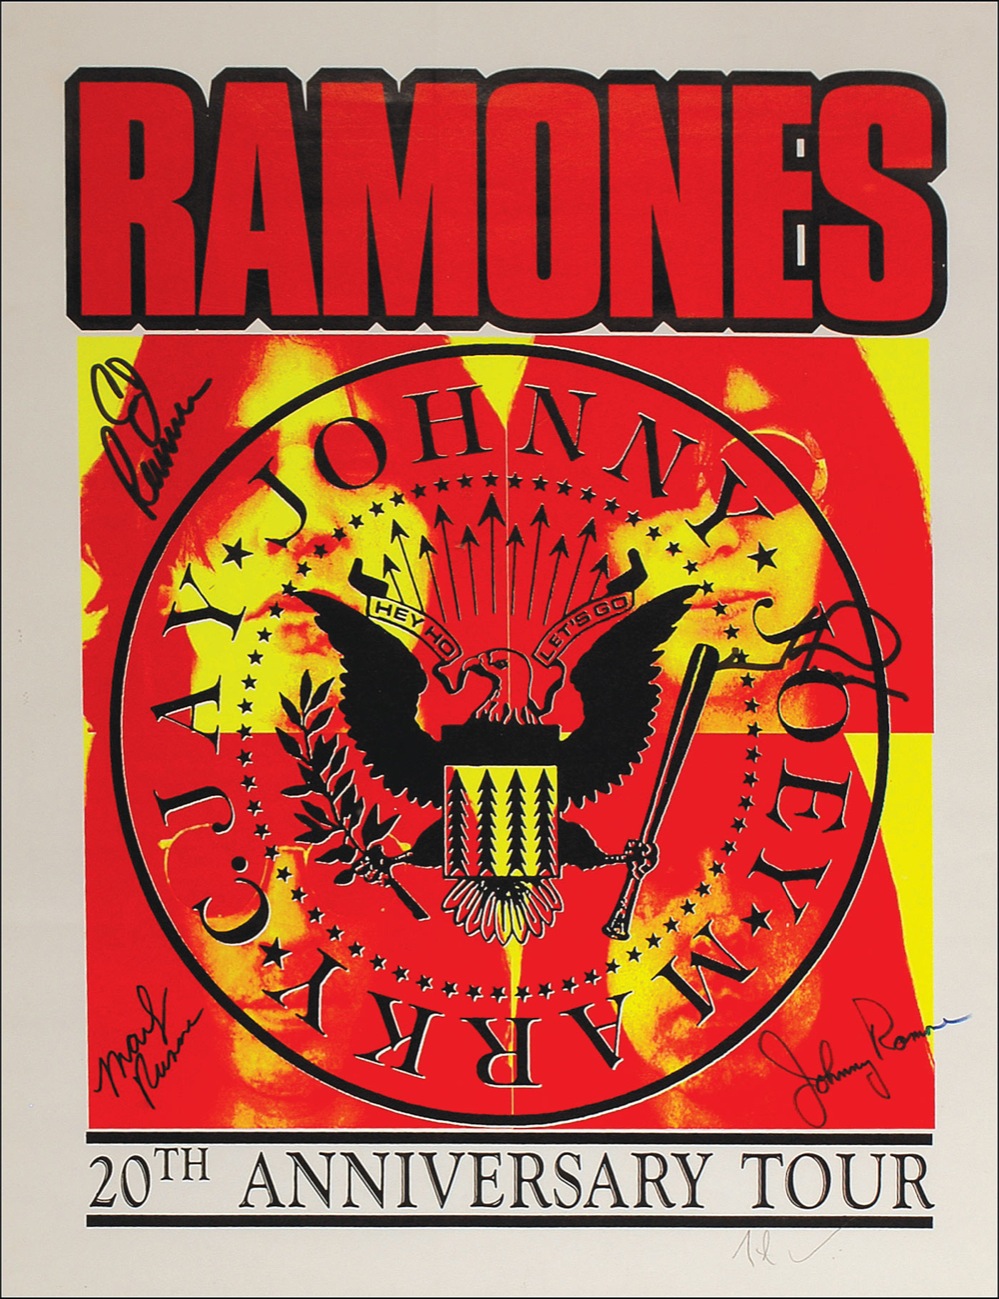 Lot #941 The Ramones